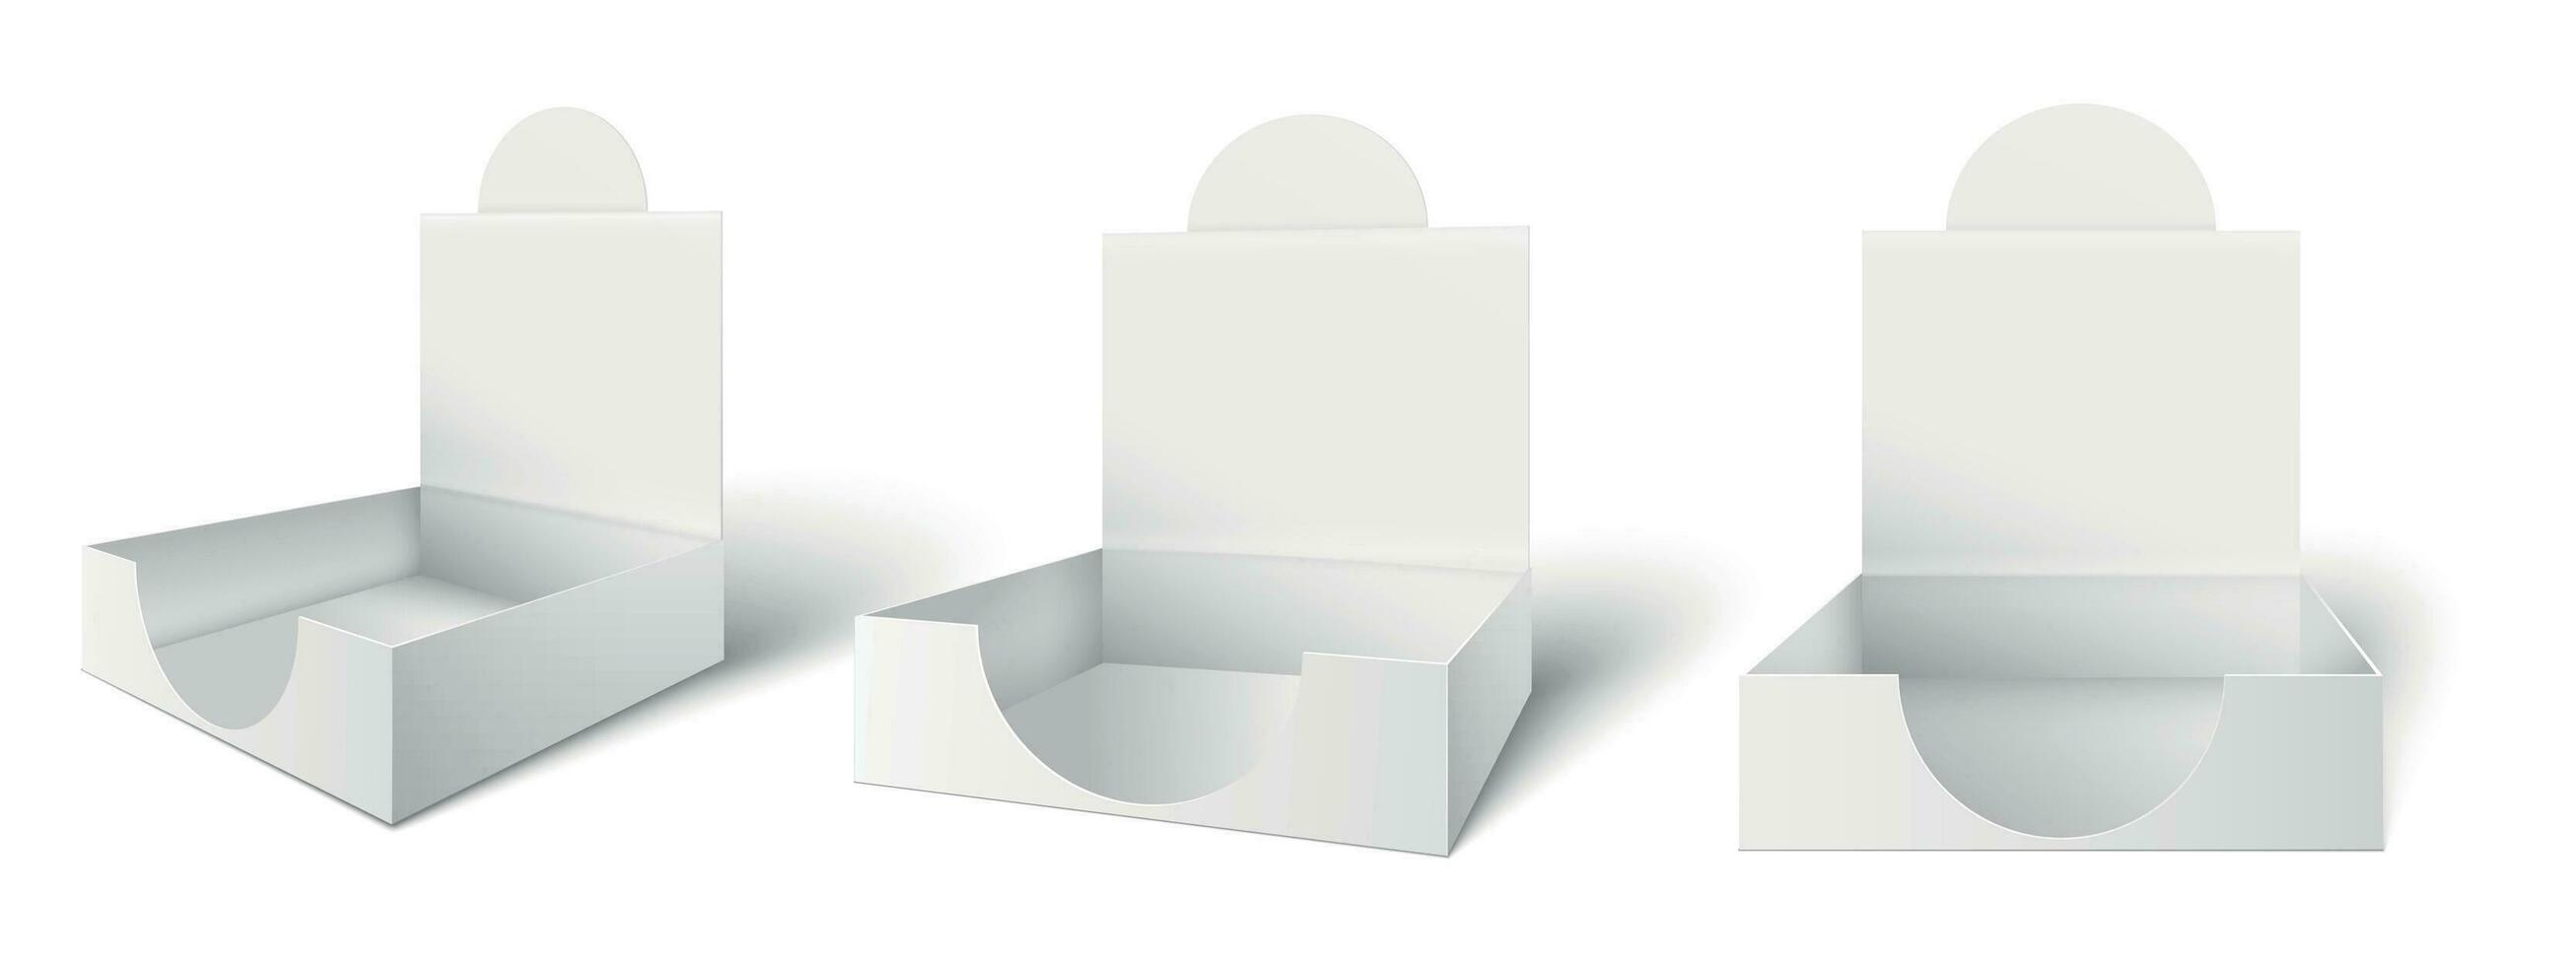 cartulina mostrador muestra caja. encimeras publicidad cajas, abierto embalaje y paquetes Bosquejo 3d vector ilustración conjunto